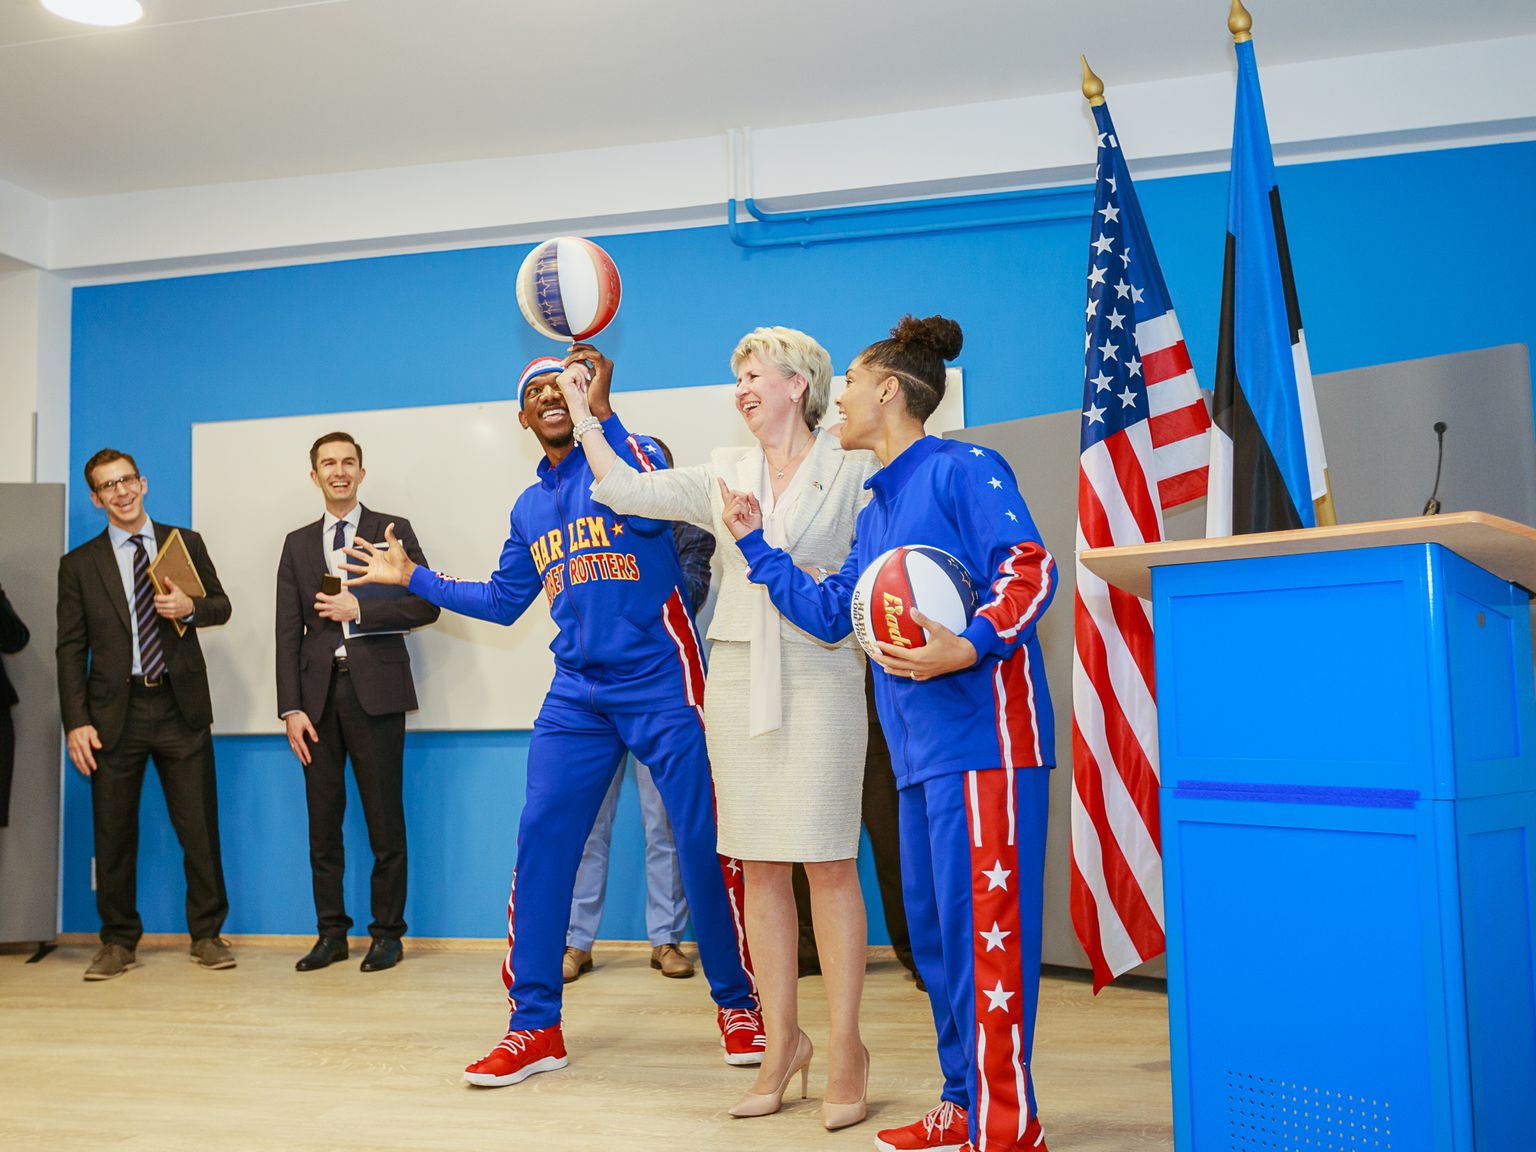 С элементами и живыми звездами американского баскетбольного шоу в сентябре 2017 года прошло открытие в Нарвской центральной библиотеке обновленного Американского центра. На сегодня уже пятнадцать лет как американские дипломаты спонсируют подобные мероприятия и культурно-просветительскую деятельность в Нарве.